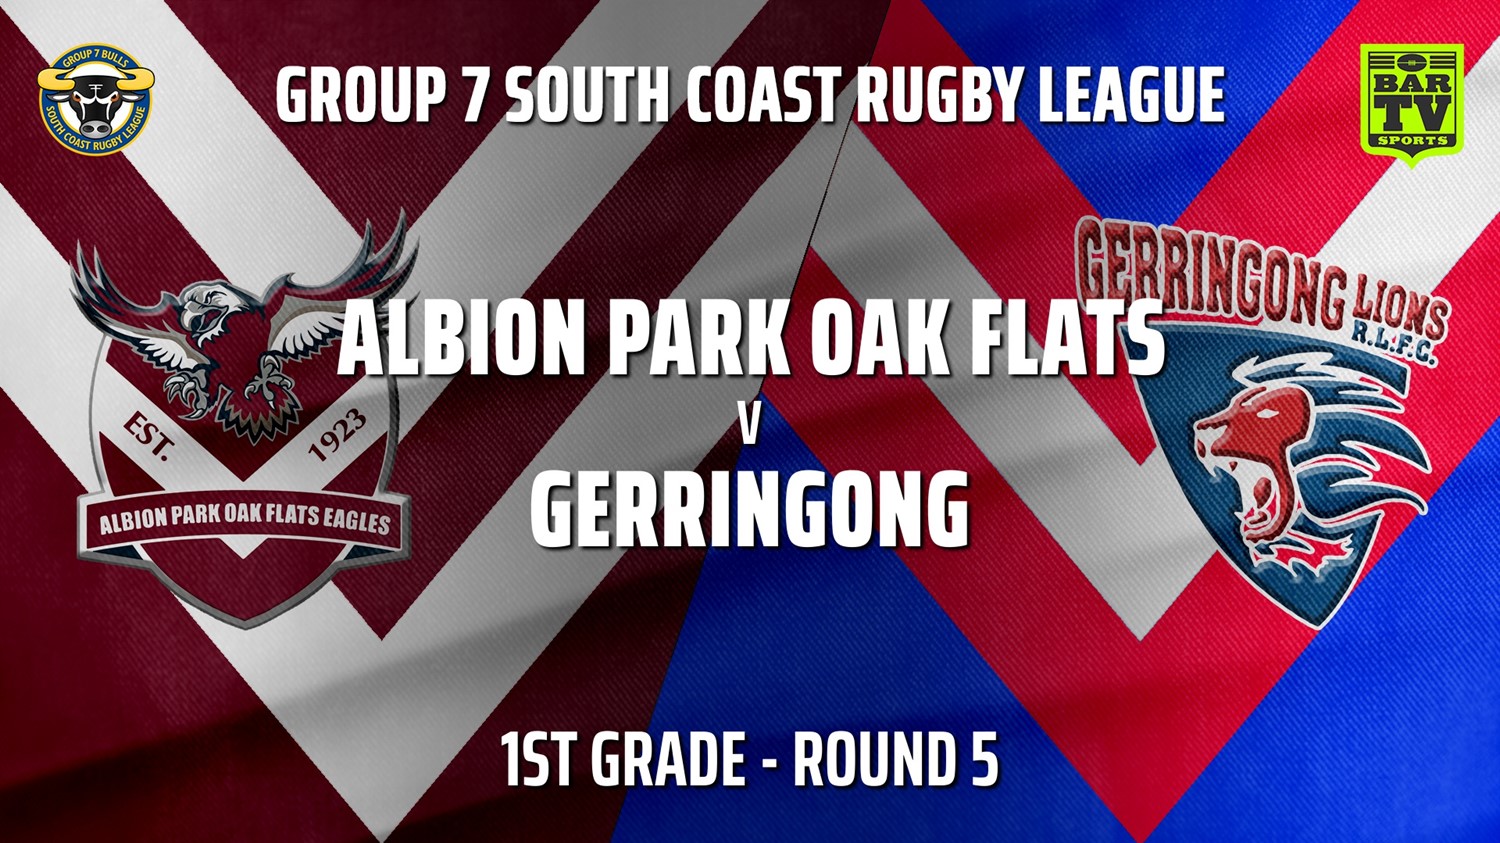 210515-Group 7 RL Round 5 - 1st Grade - Albion Park Oak Flats v Gerringong Slate Image